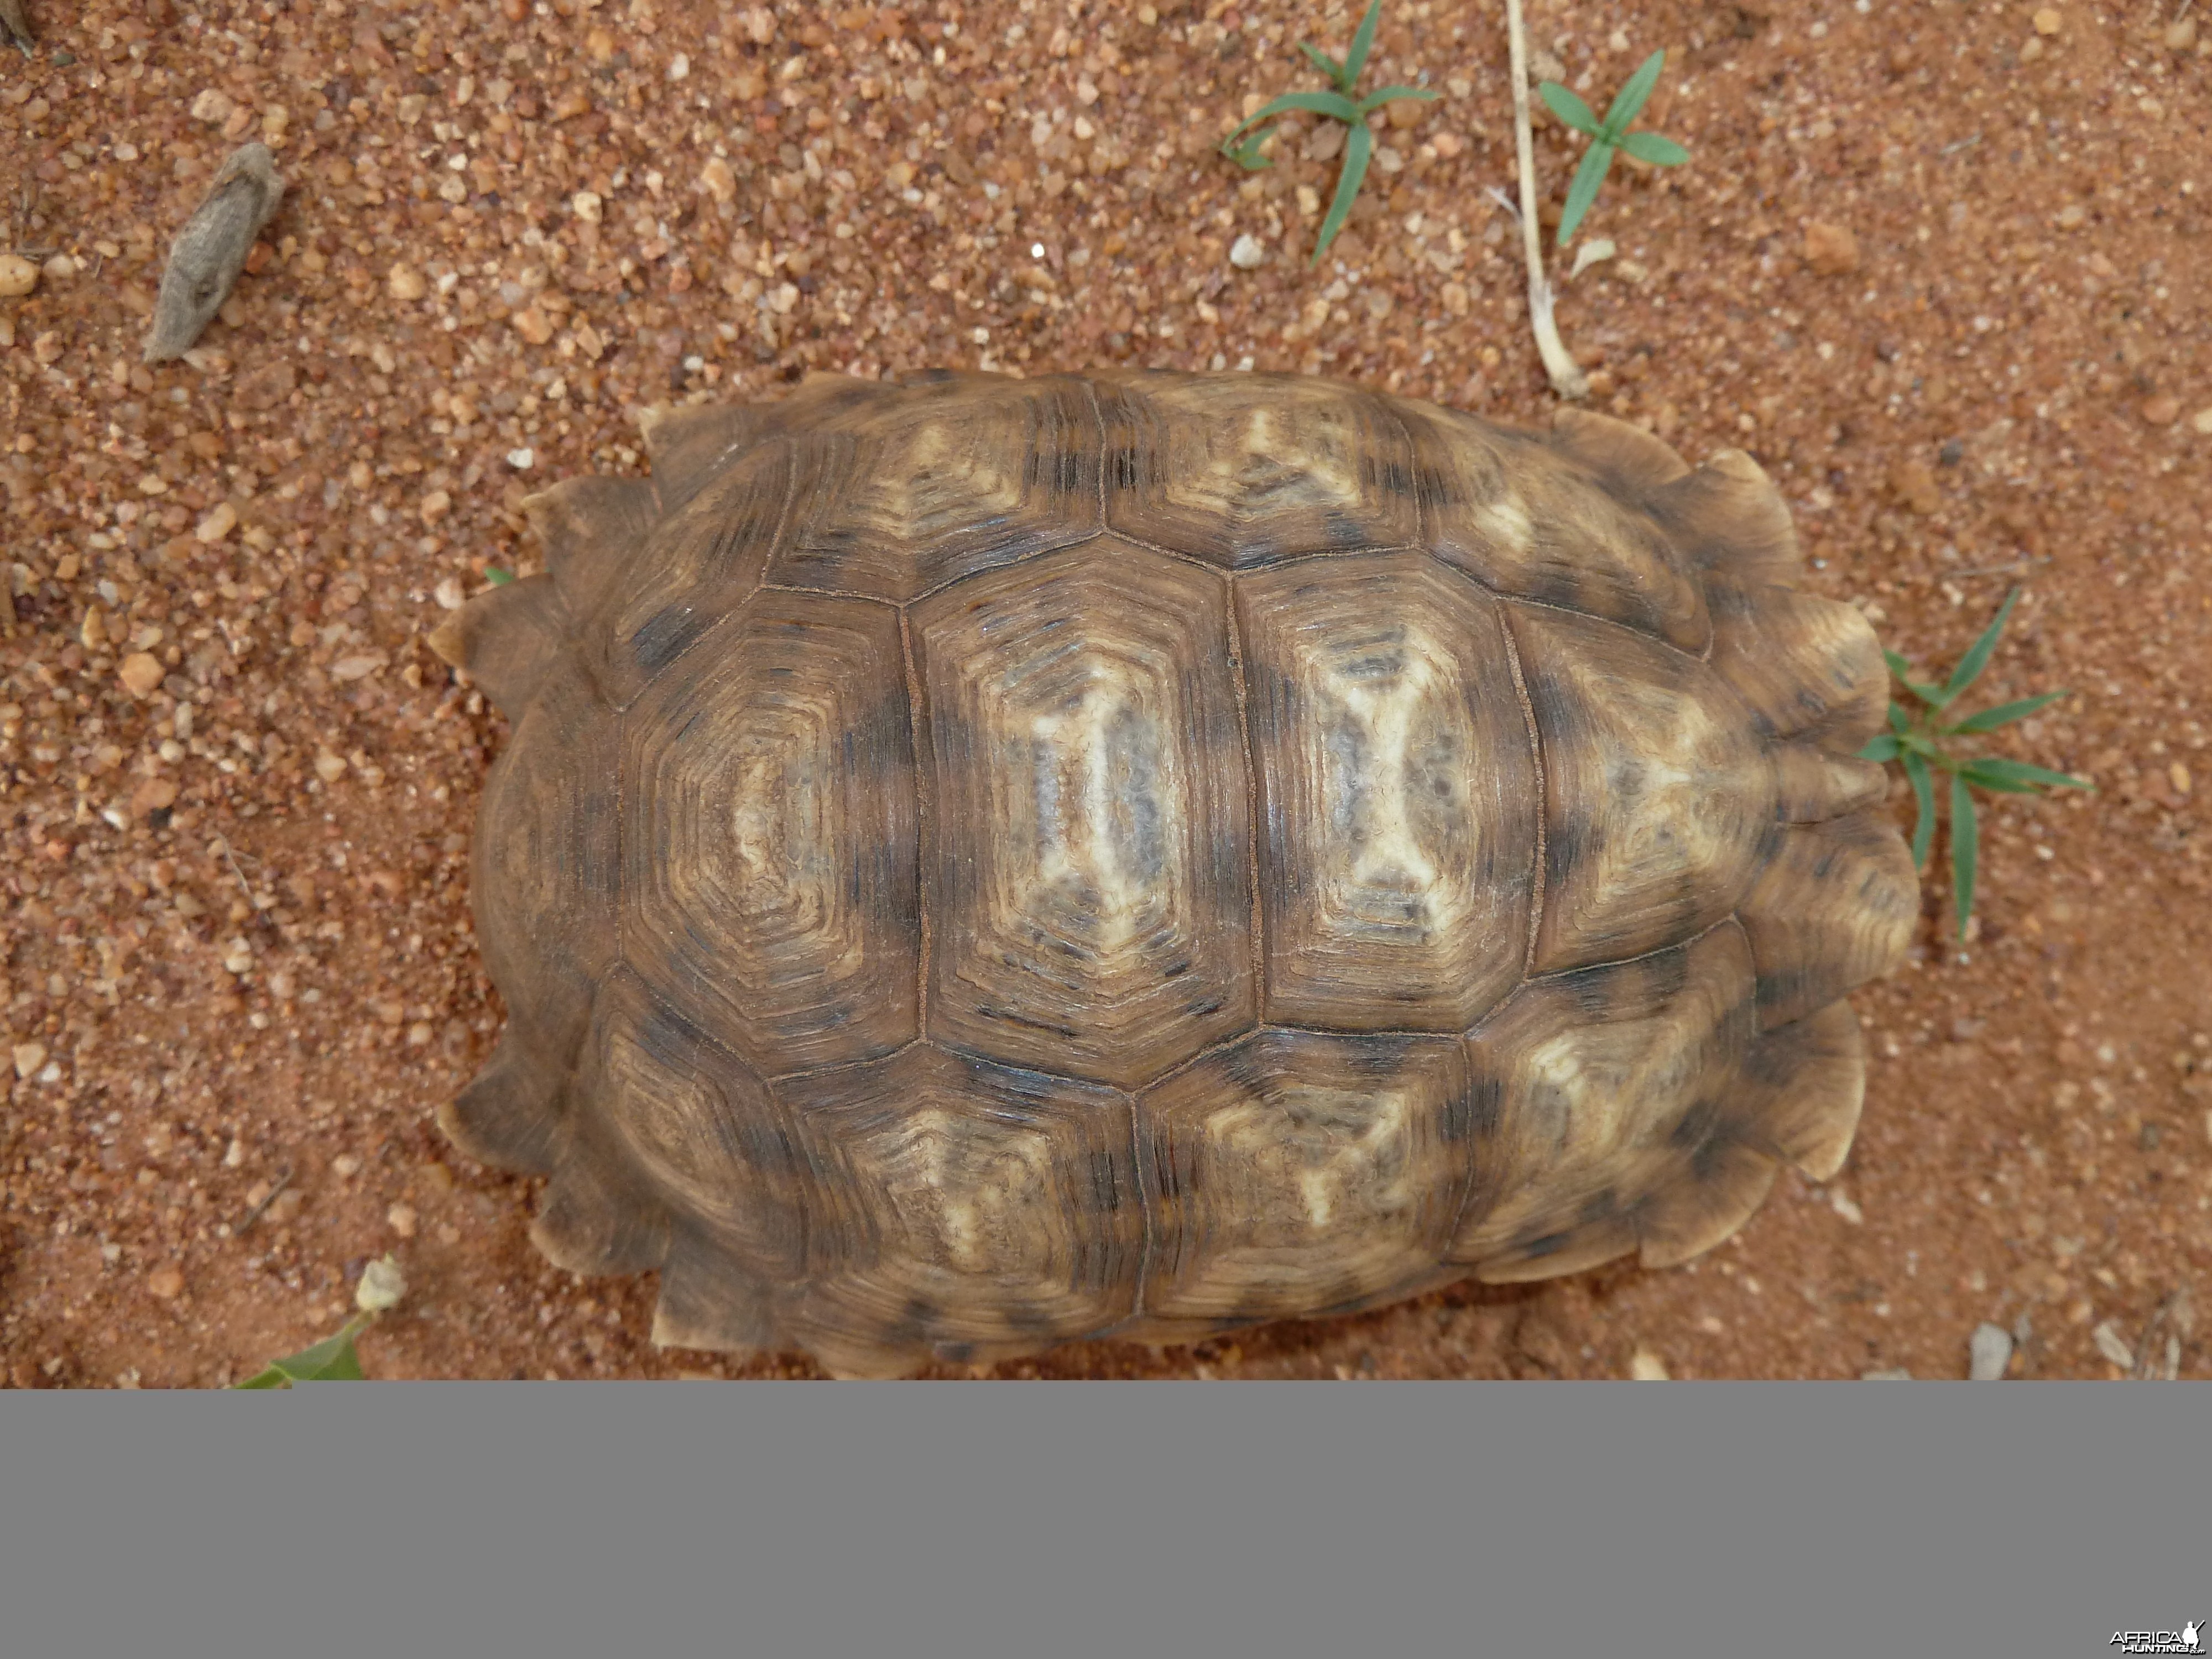 Serrated Star Tortoise Namibia